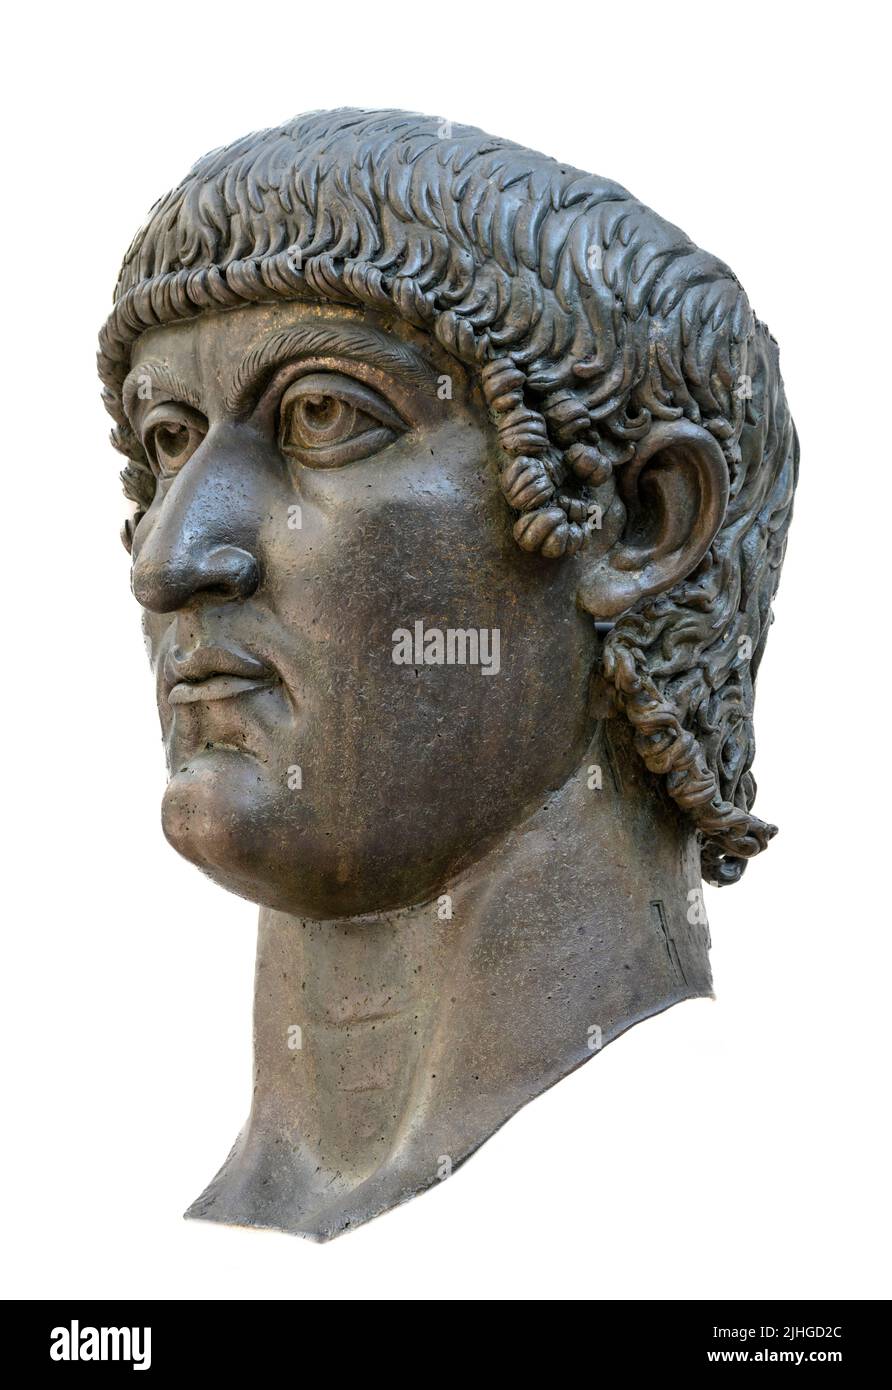 La colosal cabeza de bronce de Constantino el Grande en el Palazzo dei Conservatori, parte de los Museos Capitolinos, Roma, Italia. Foto de stock